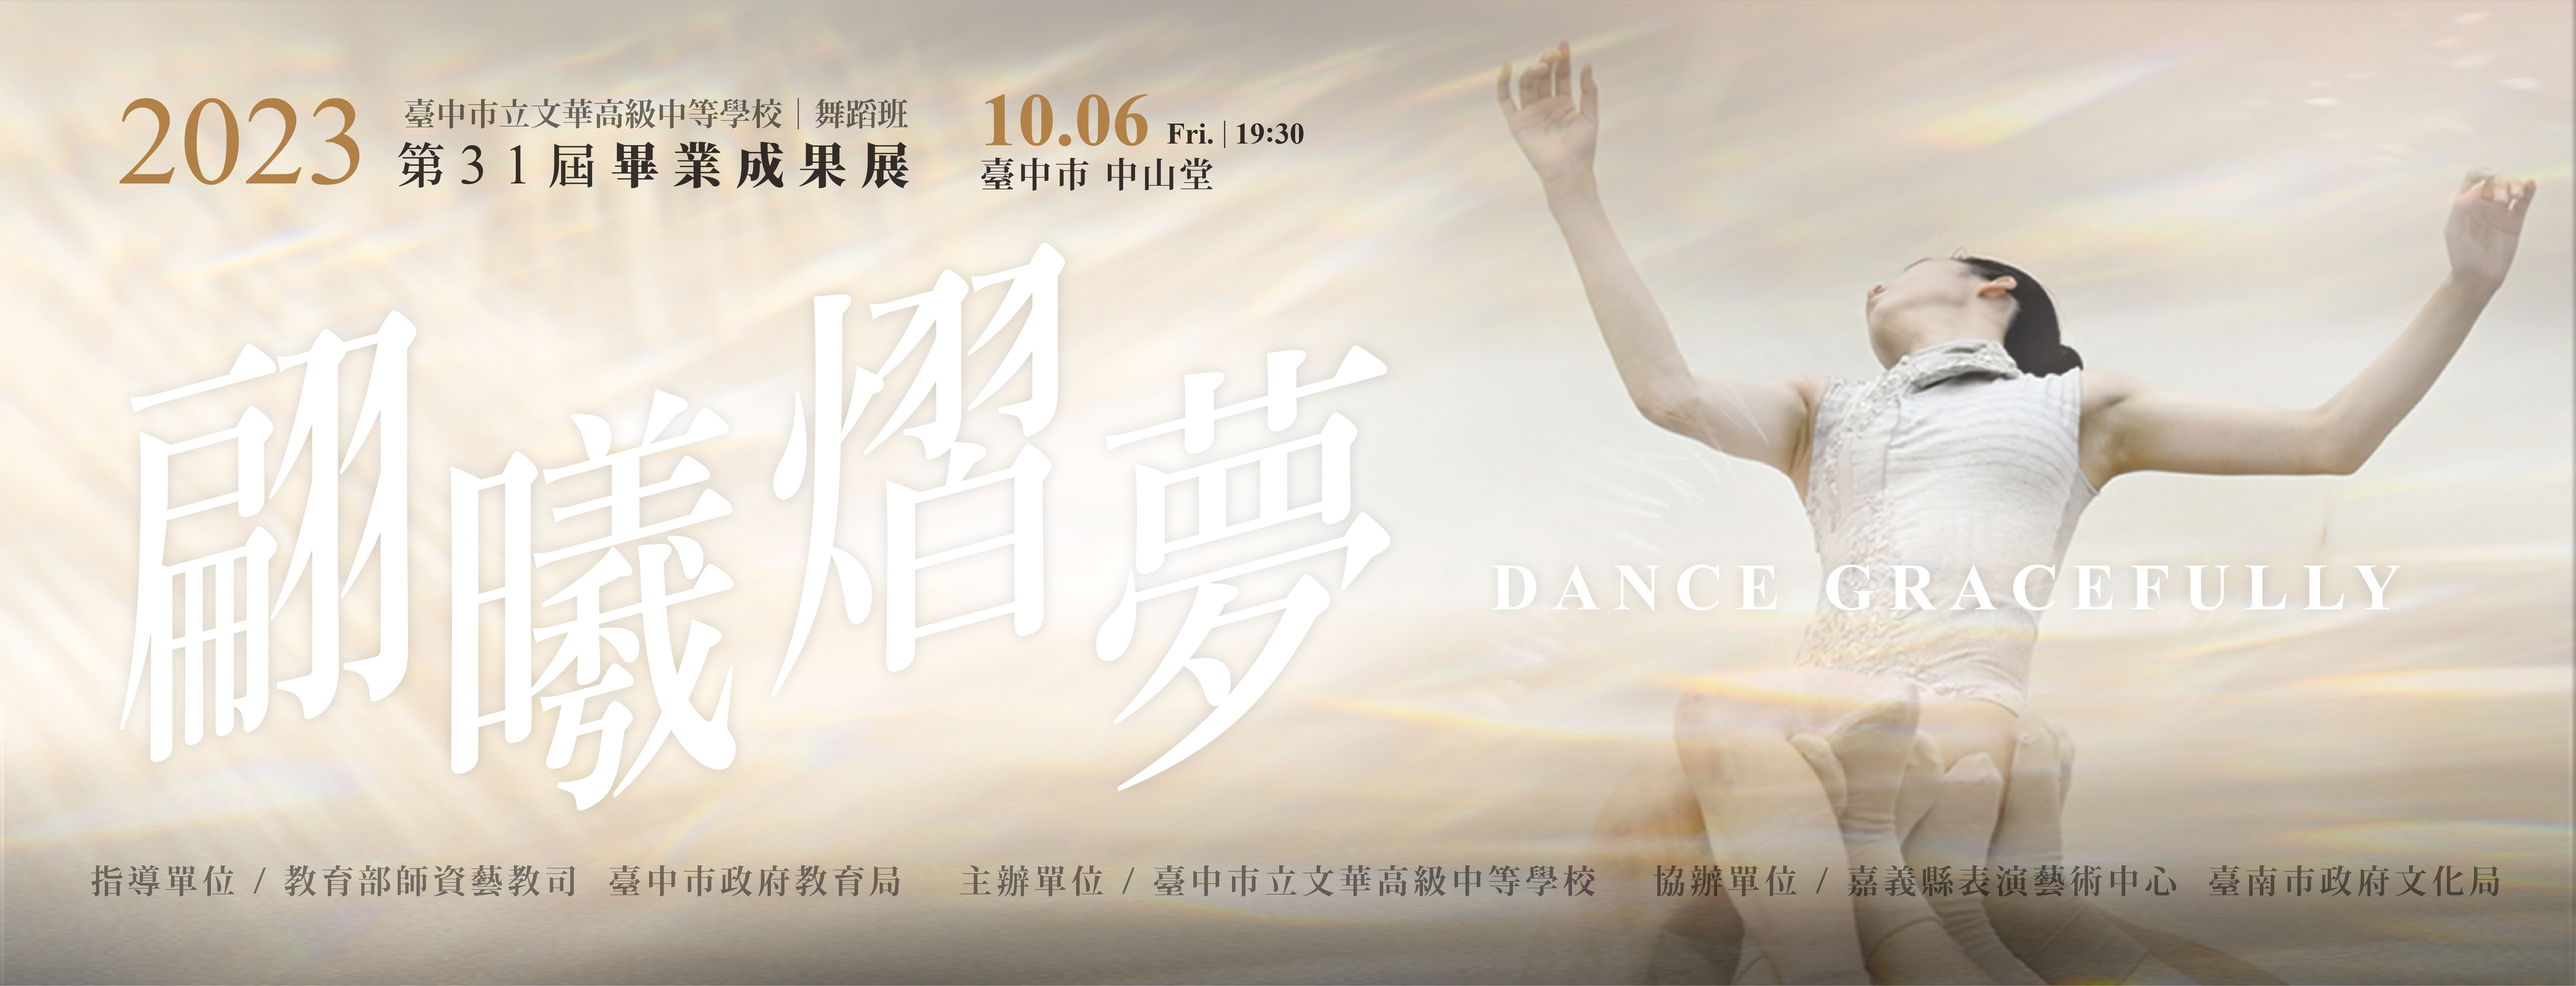 臺中市立文華高級中等學校舞蹈班第31屆畢業成果展－《翩曦熠夢》